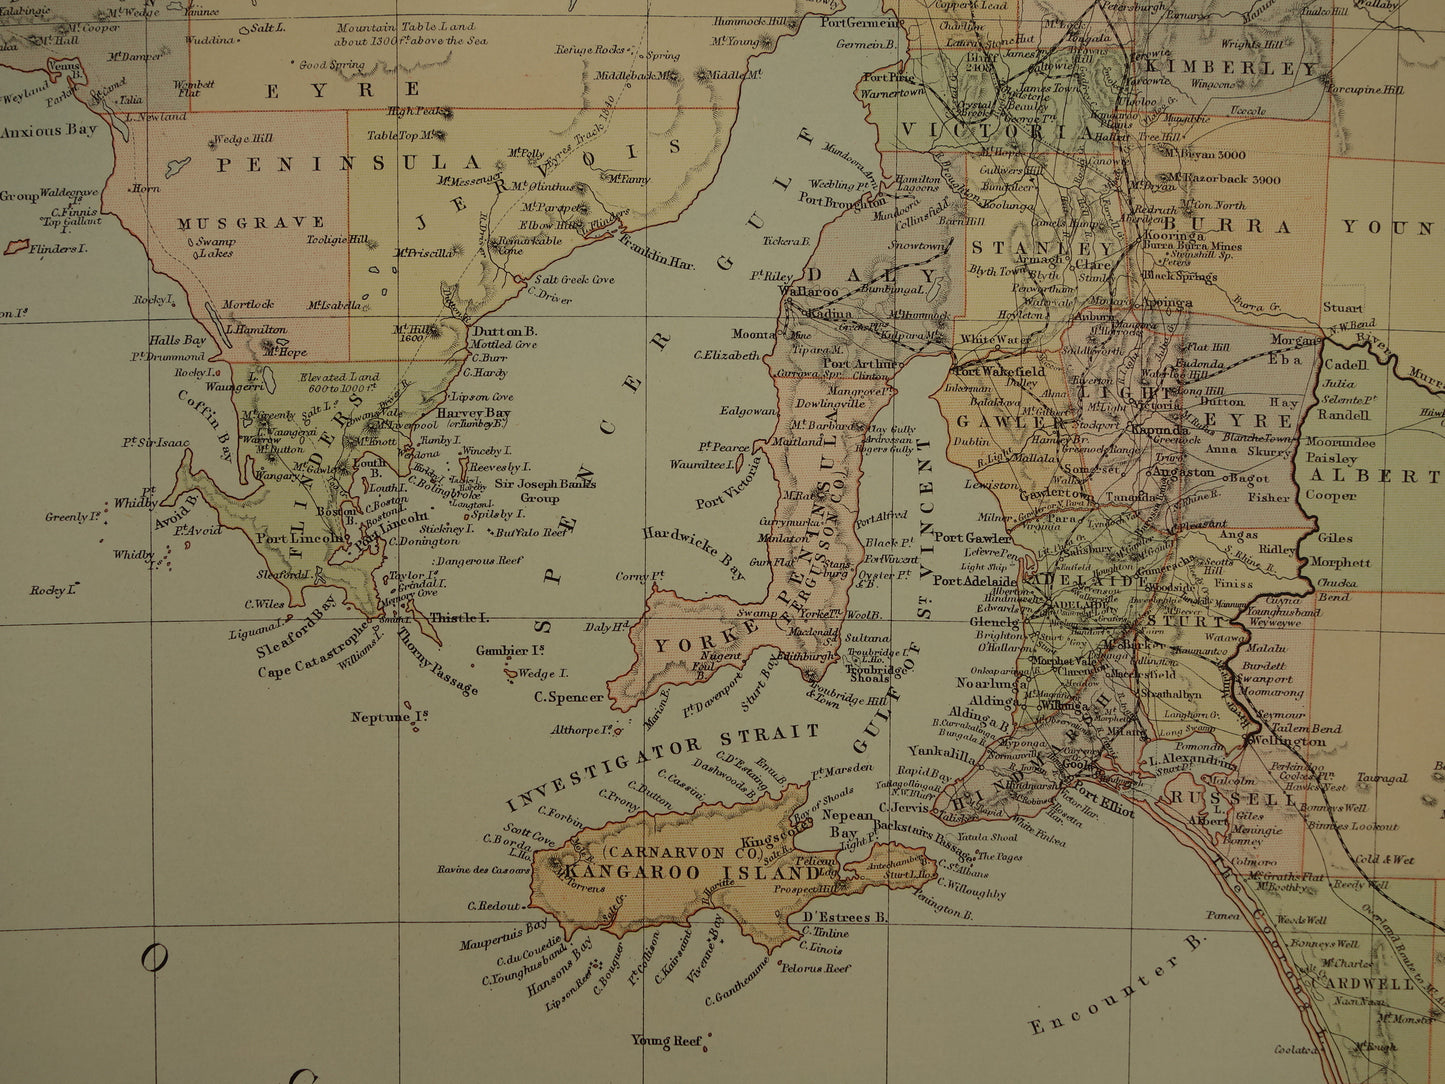 Grote kaart van AUSTRALIË oude kaart van Souh Australia met Northern Territory 1890 originele antieke Engelse landkaart Zuid-Australië